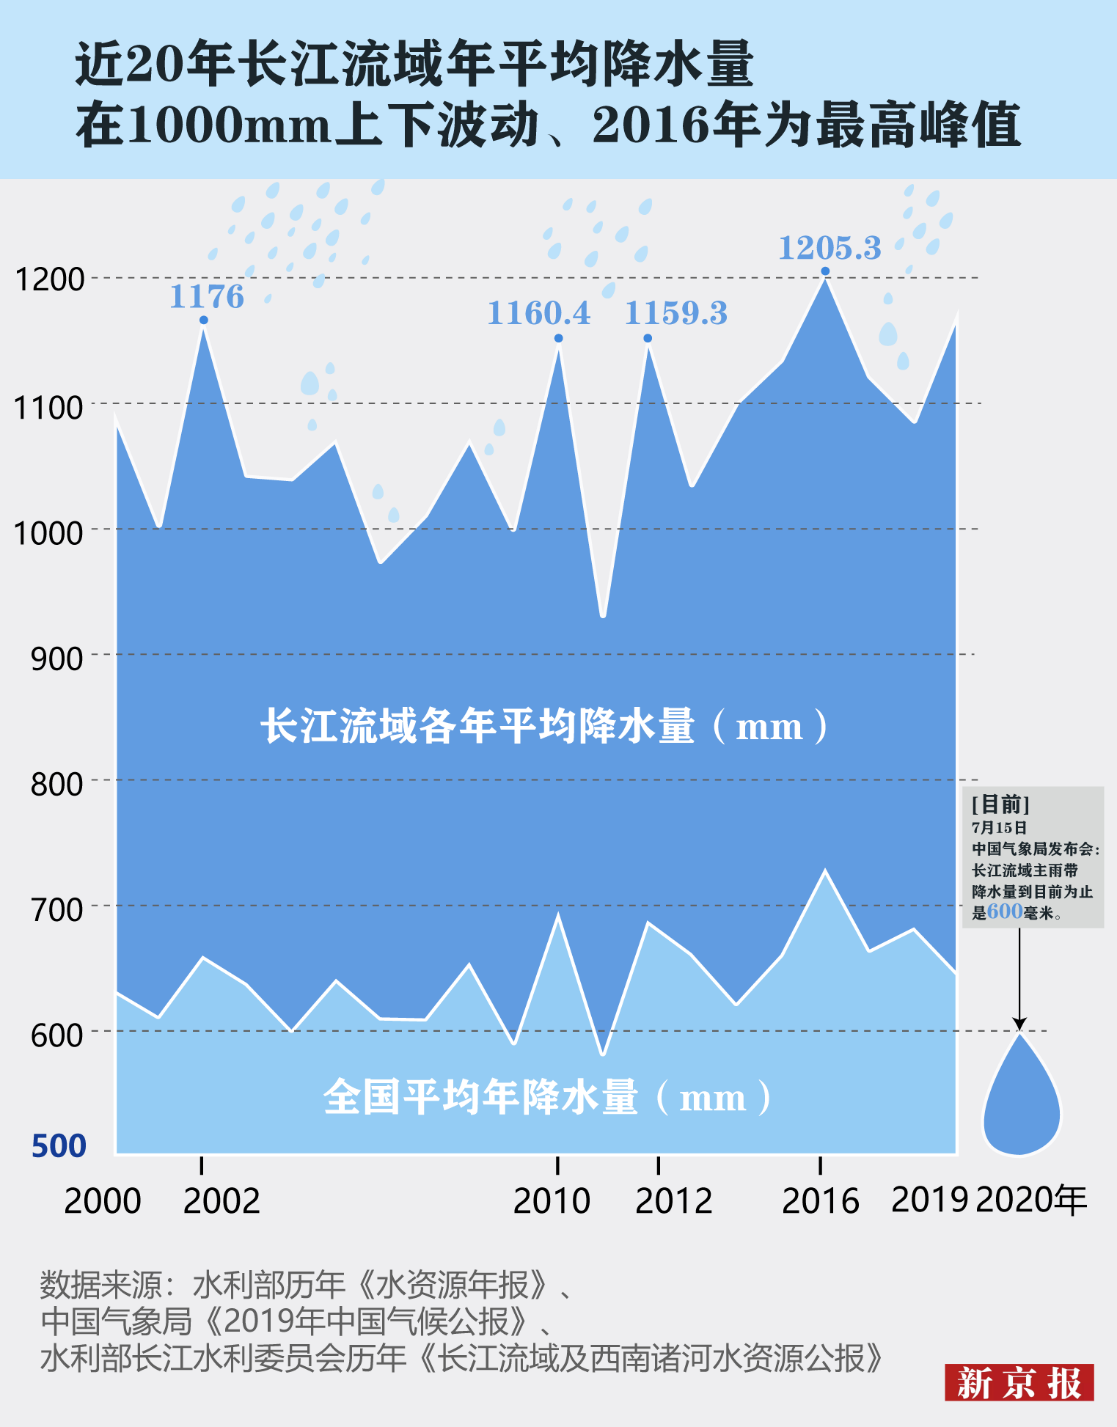 湘江全州段已出现超警戒水位2米以上 当地正加紧转移群众-荆楚网-湖北日报网